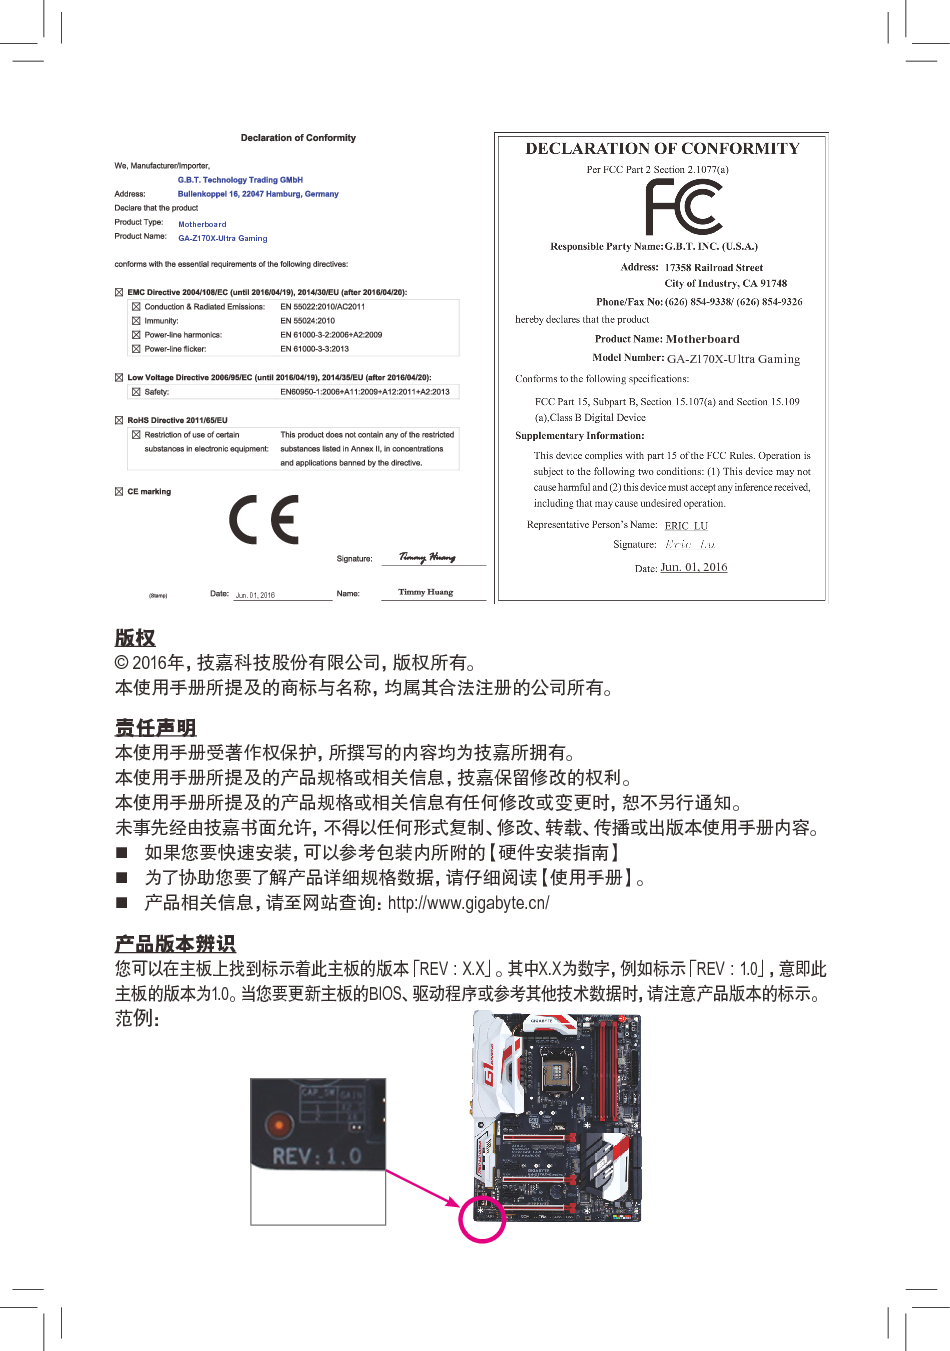 技嘉 Gigabyte GA-Z170X-Ultra Gaming 使用手册 第1页